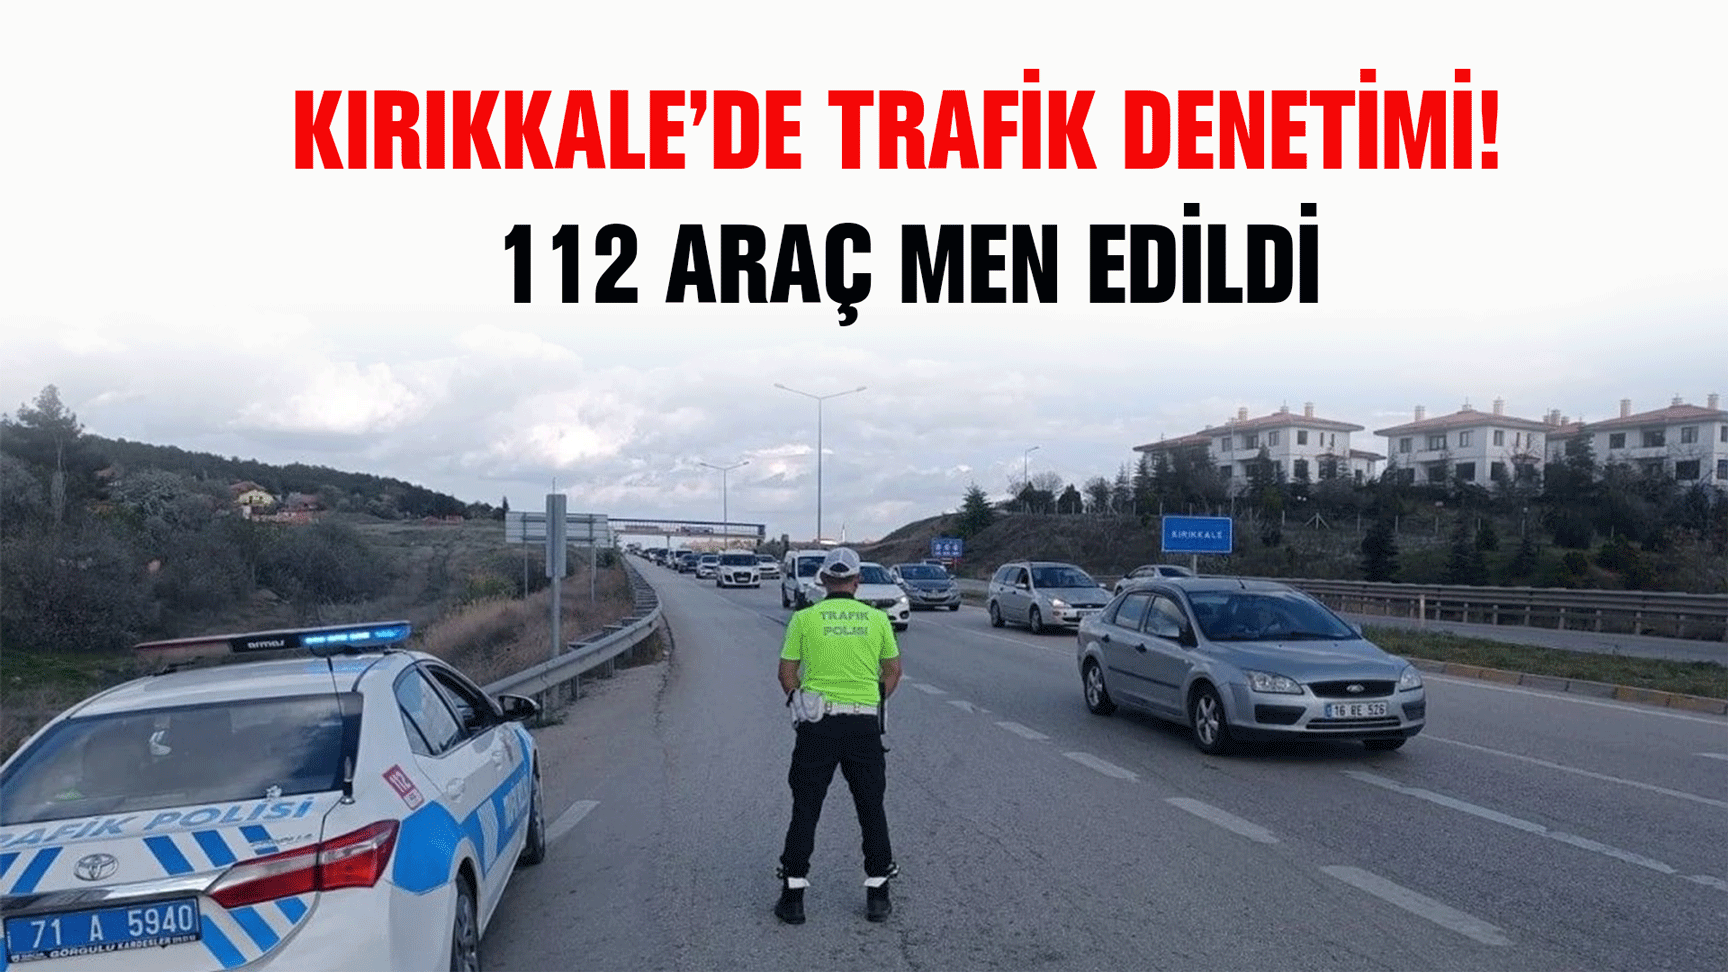 Kırıkkale’de trafik denetimi! 112 araç men edildi